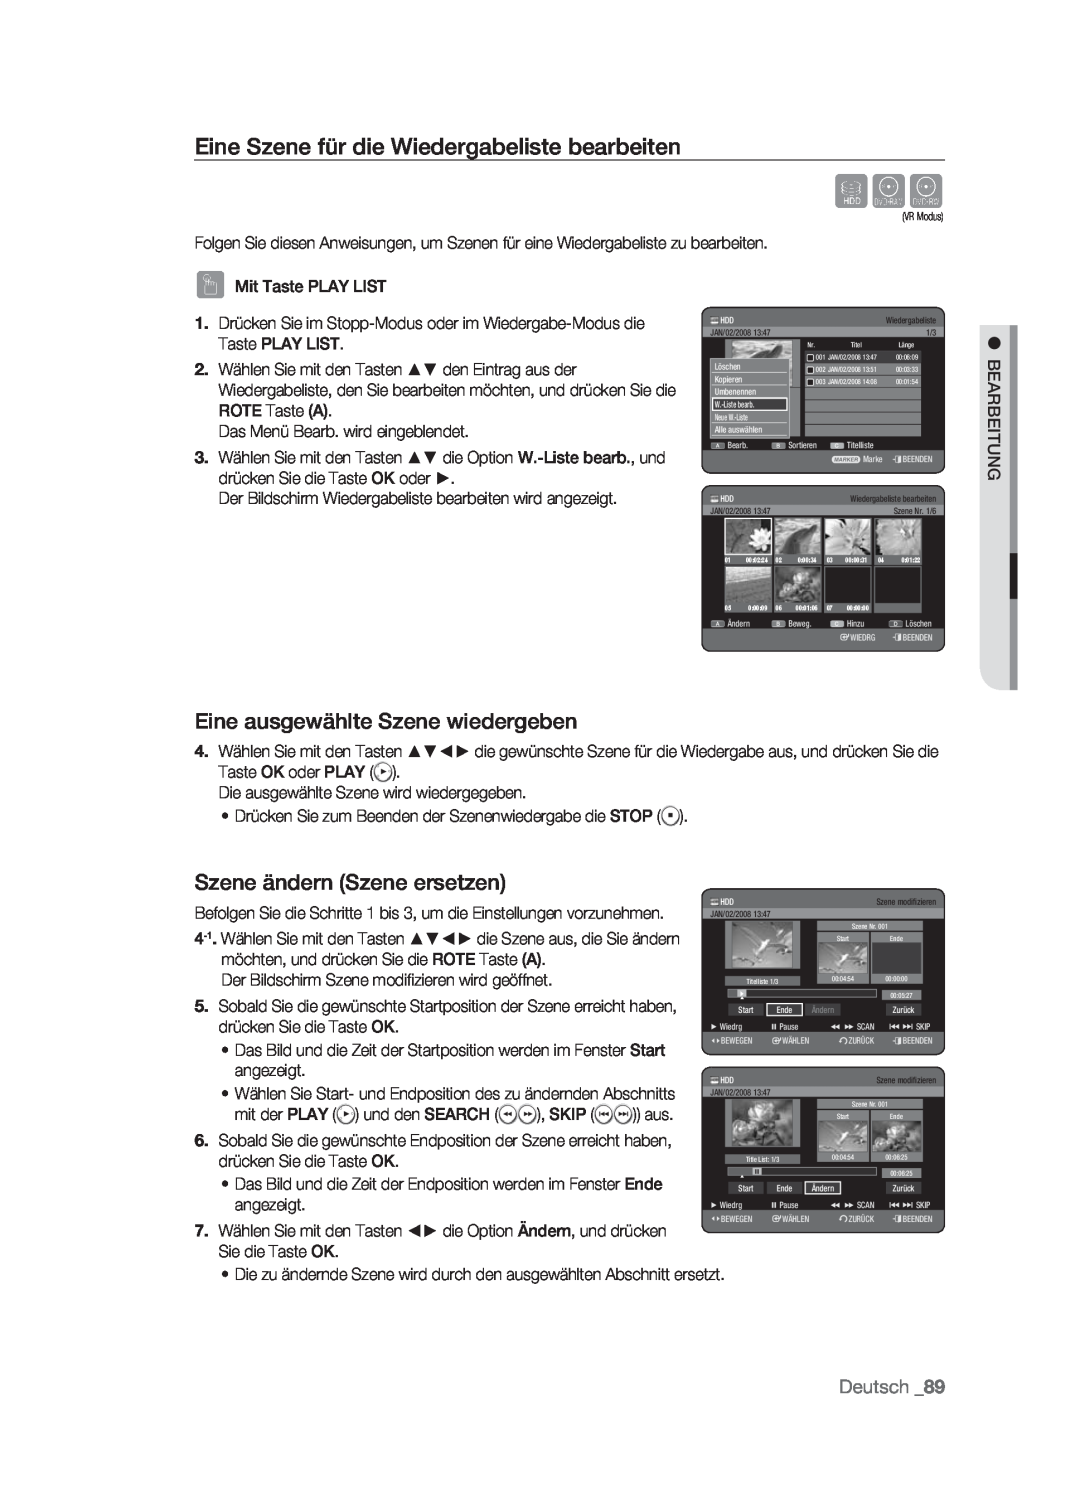 Samsung DVD-HR773/XEB manual Eine Szene für die Wiedergabeliste bearbeiten, Eine ausgewählte Szene wiedergeben, Deutsch 